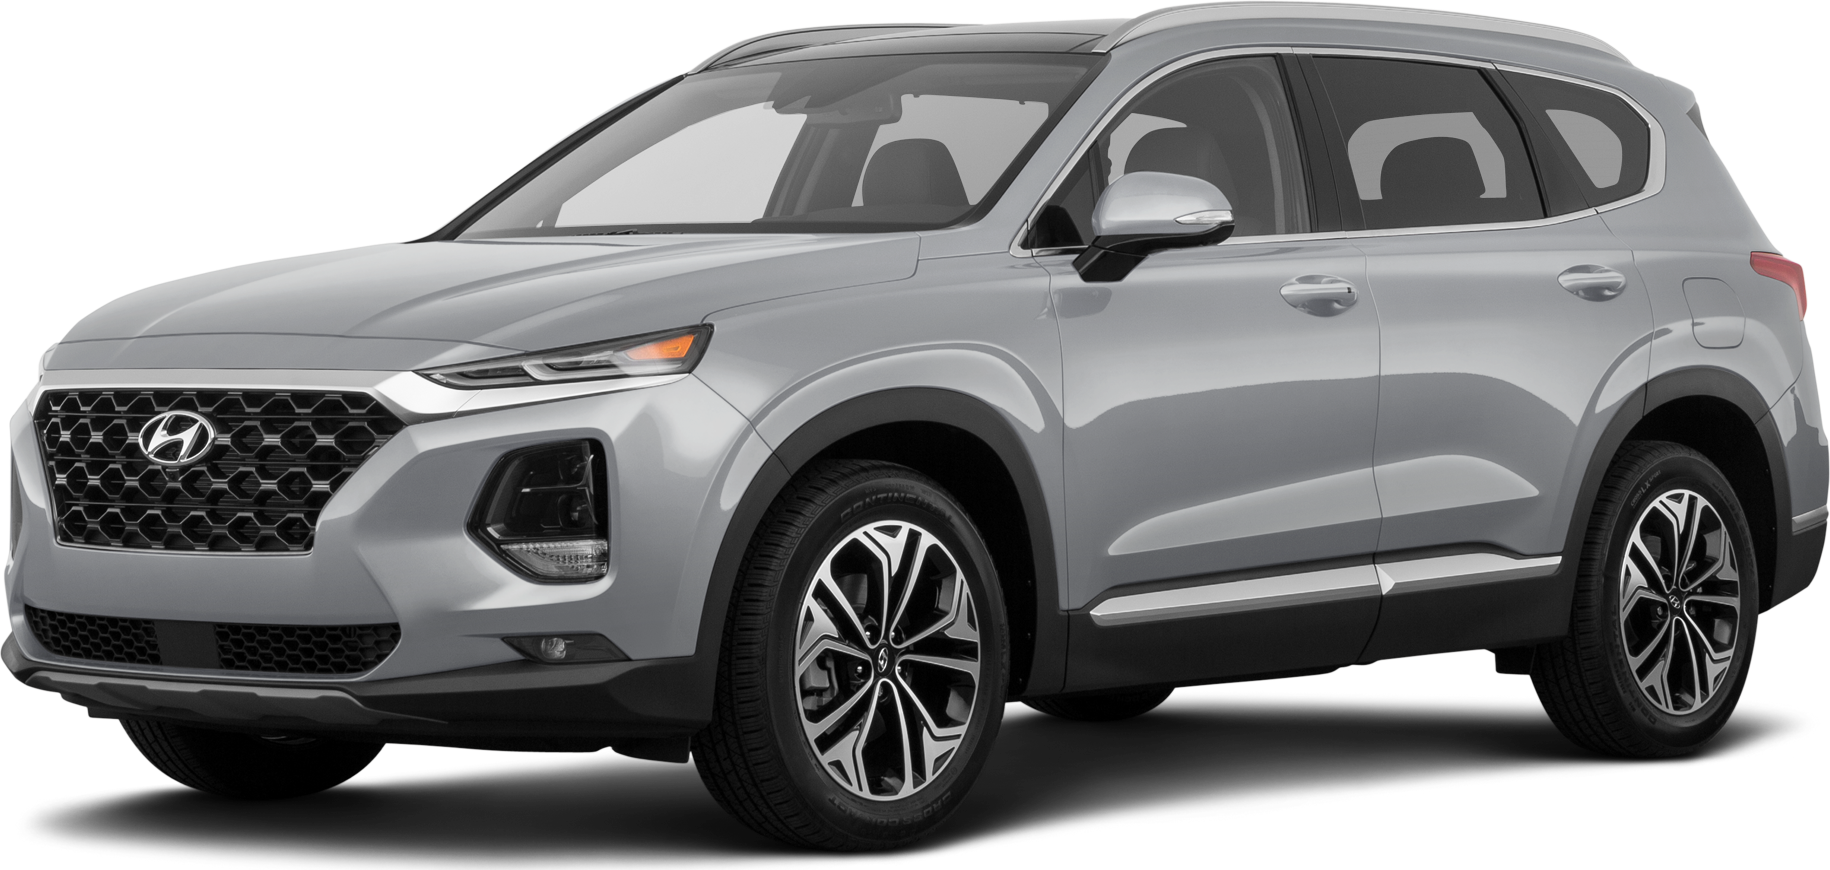 2019 Hyundai Santa Fe Price, Value, Ratings & Reviews